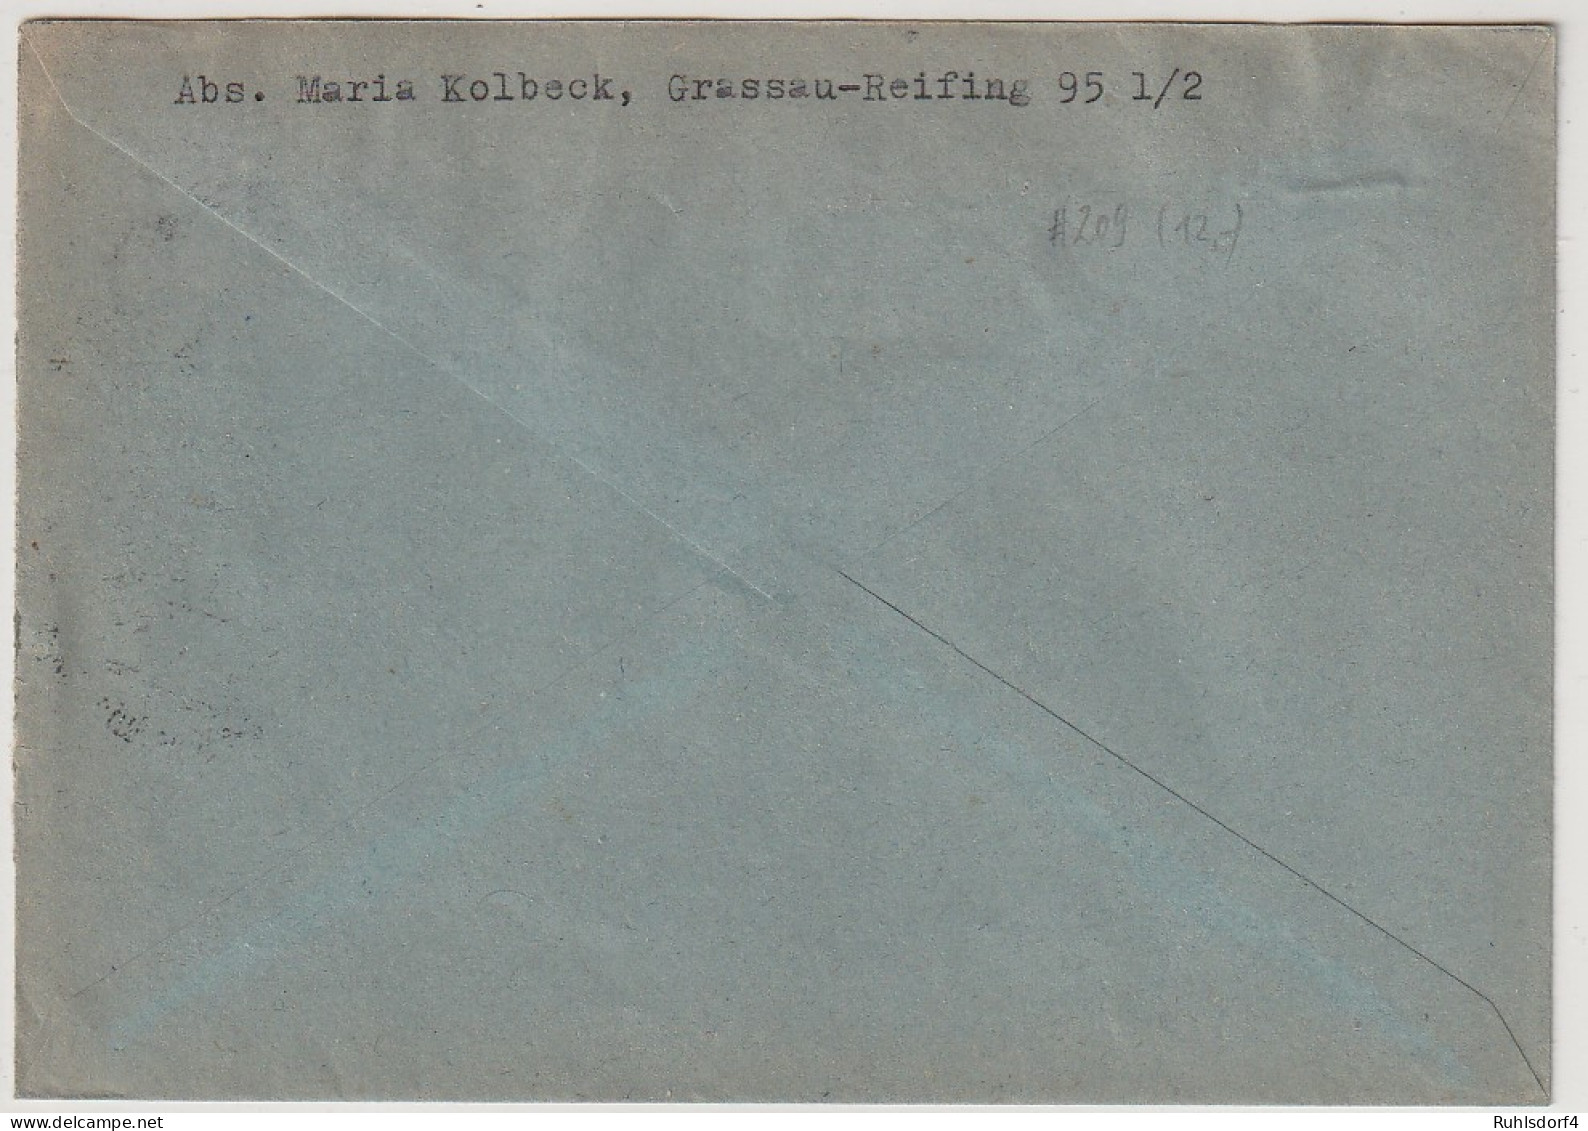 Bund: Oskar Von Miller (Nr. 209) In Sauberer MeF - Cartas & Documentos